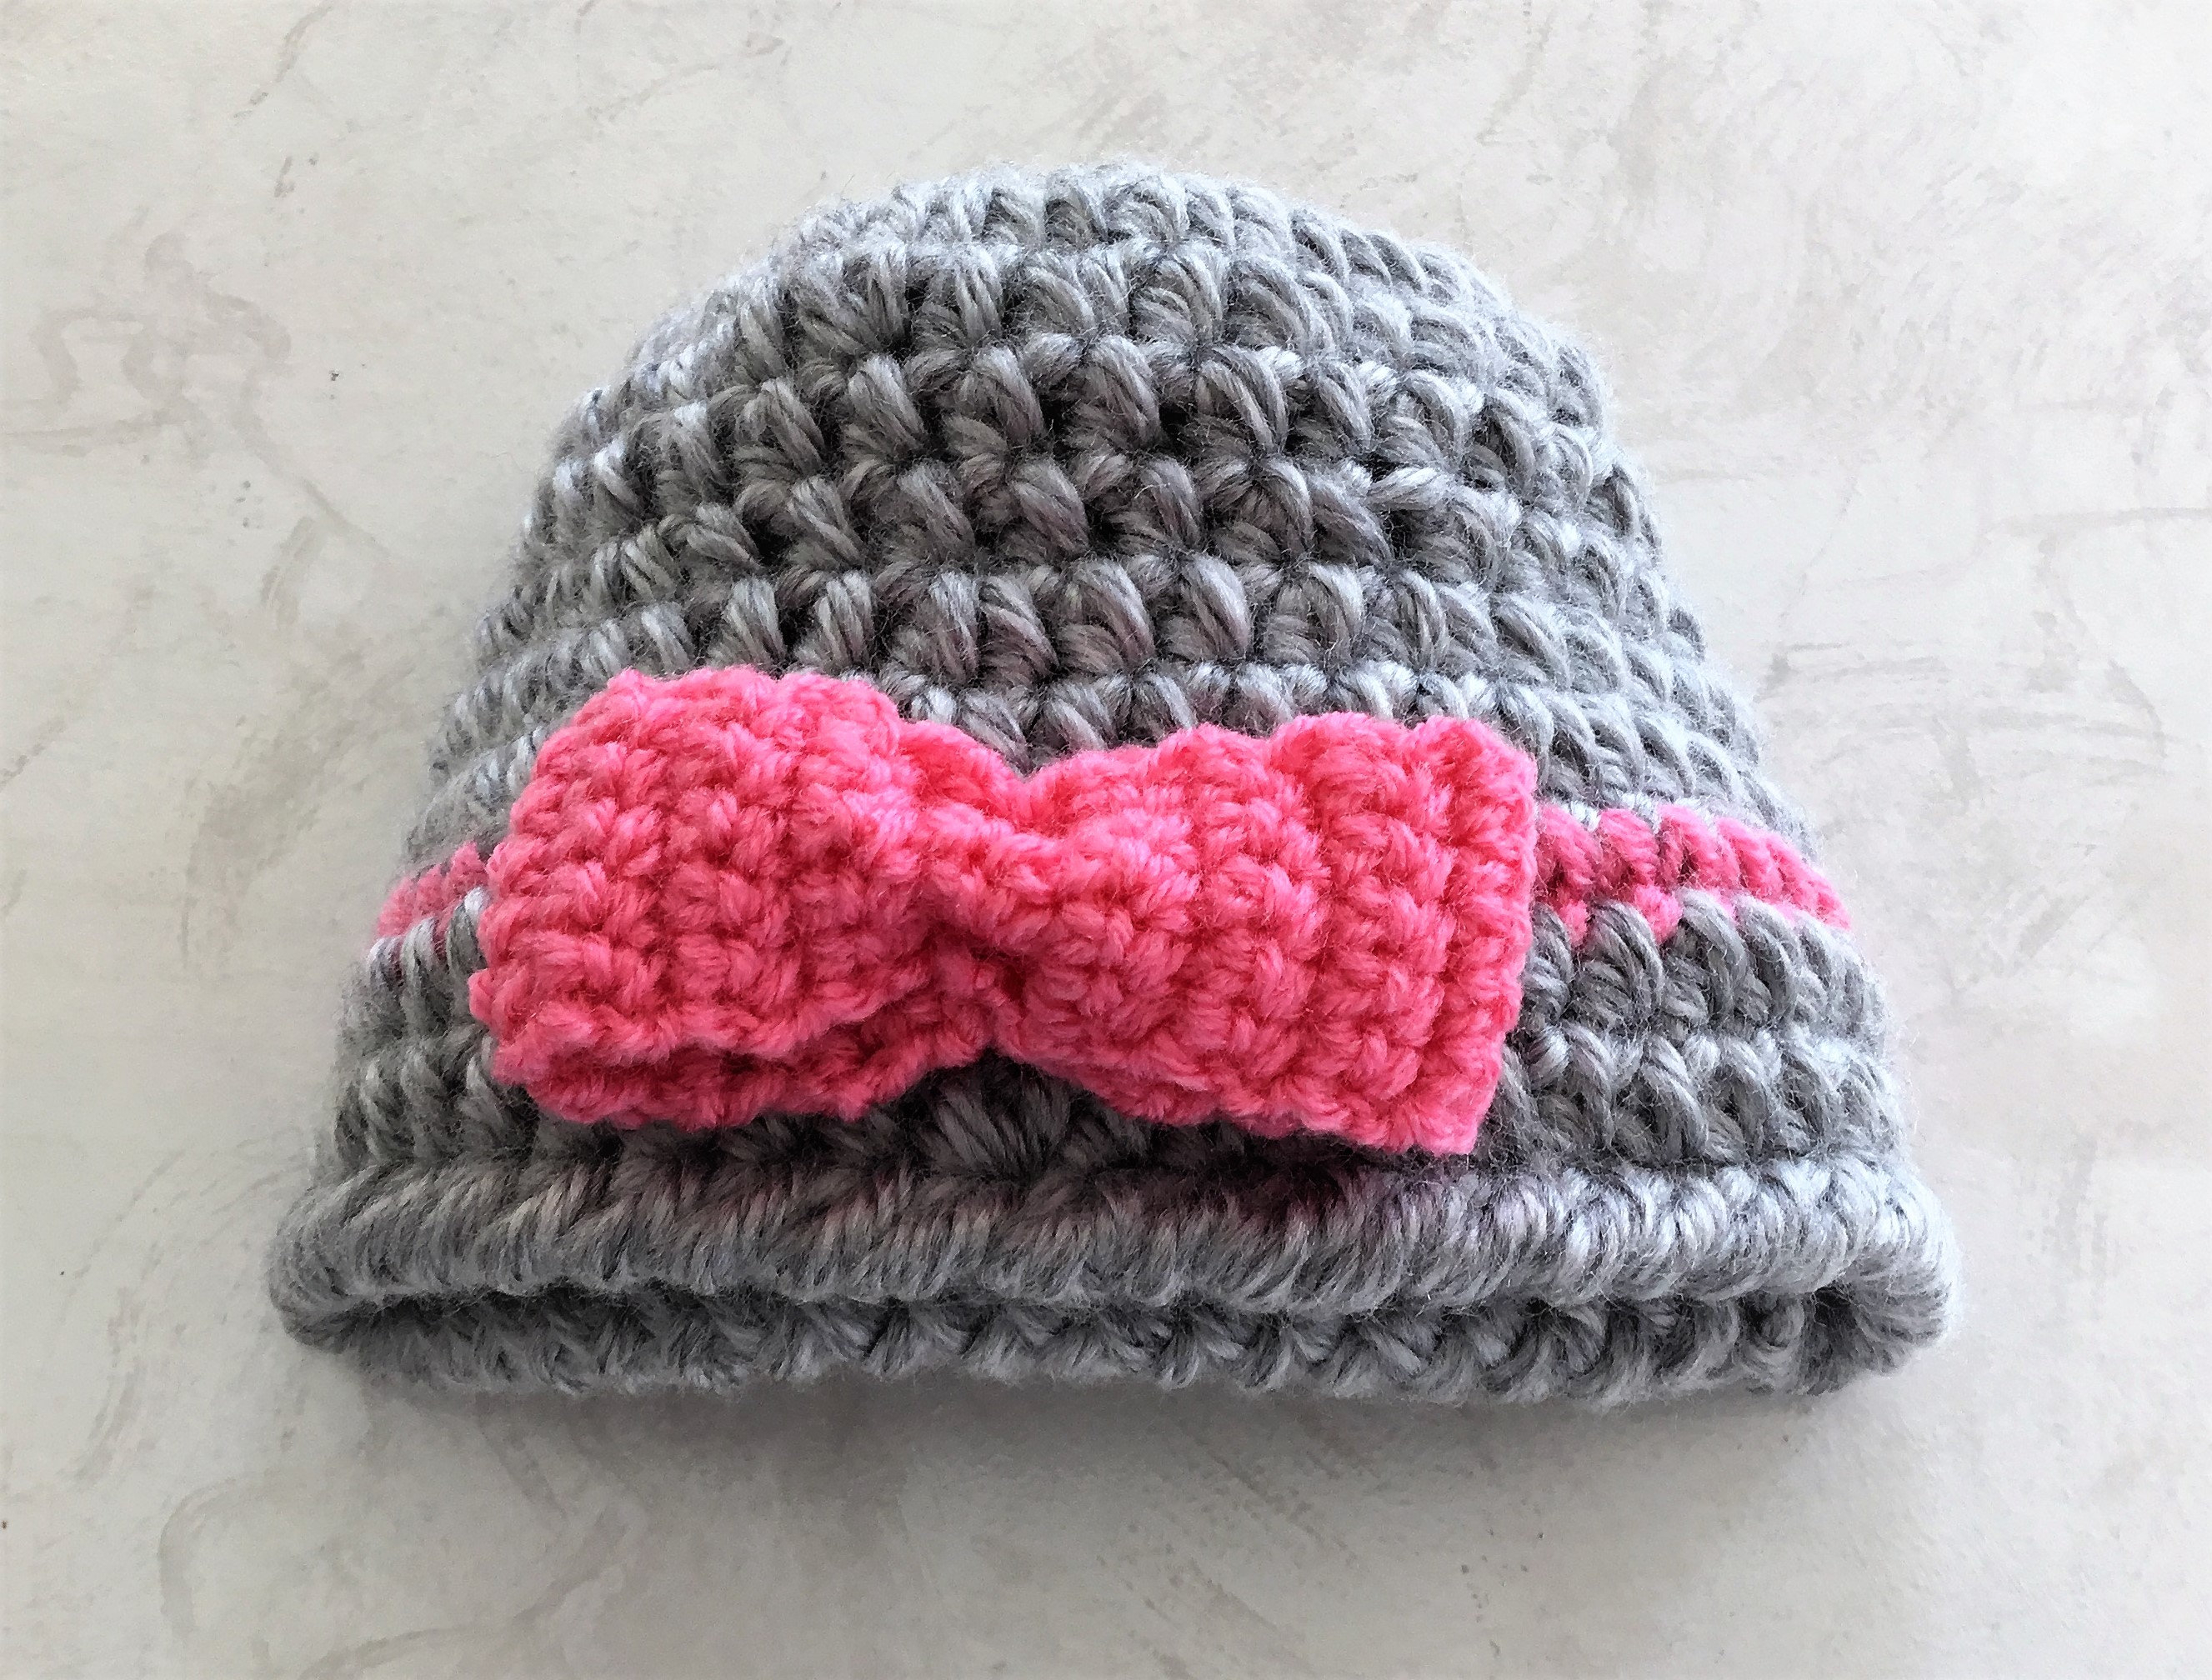 Easy Beginner Crochet Patterns Crochet Pattern Childs Winter Hat With Bow Easy Beginner Etsy